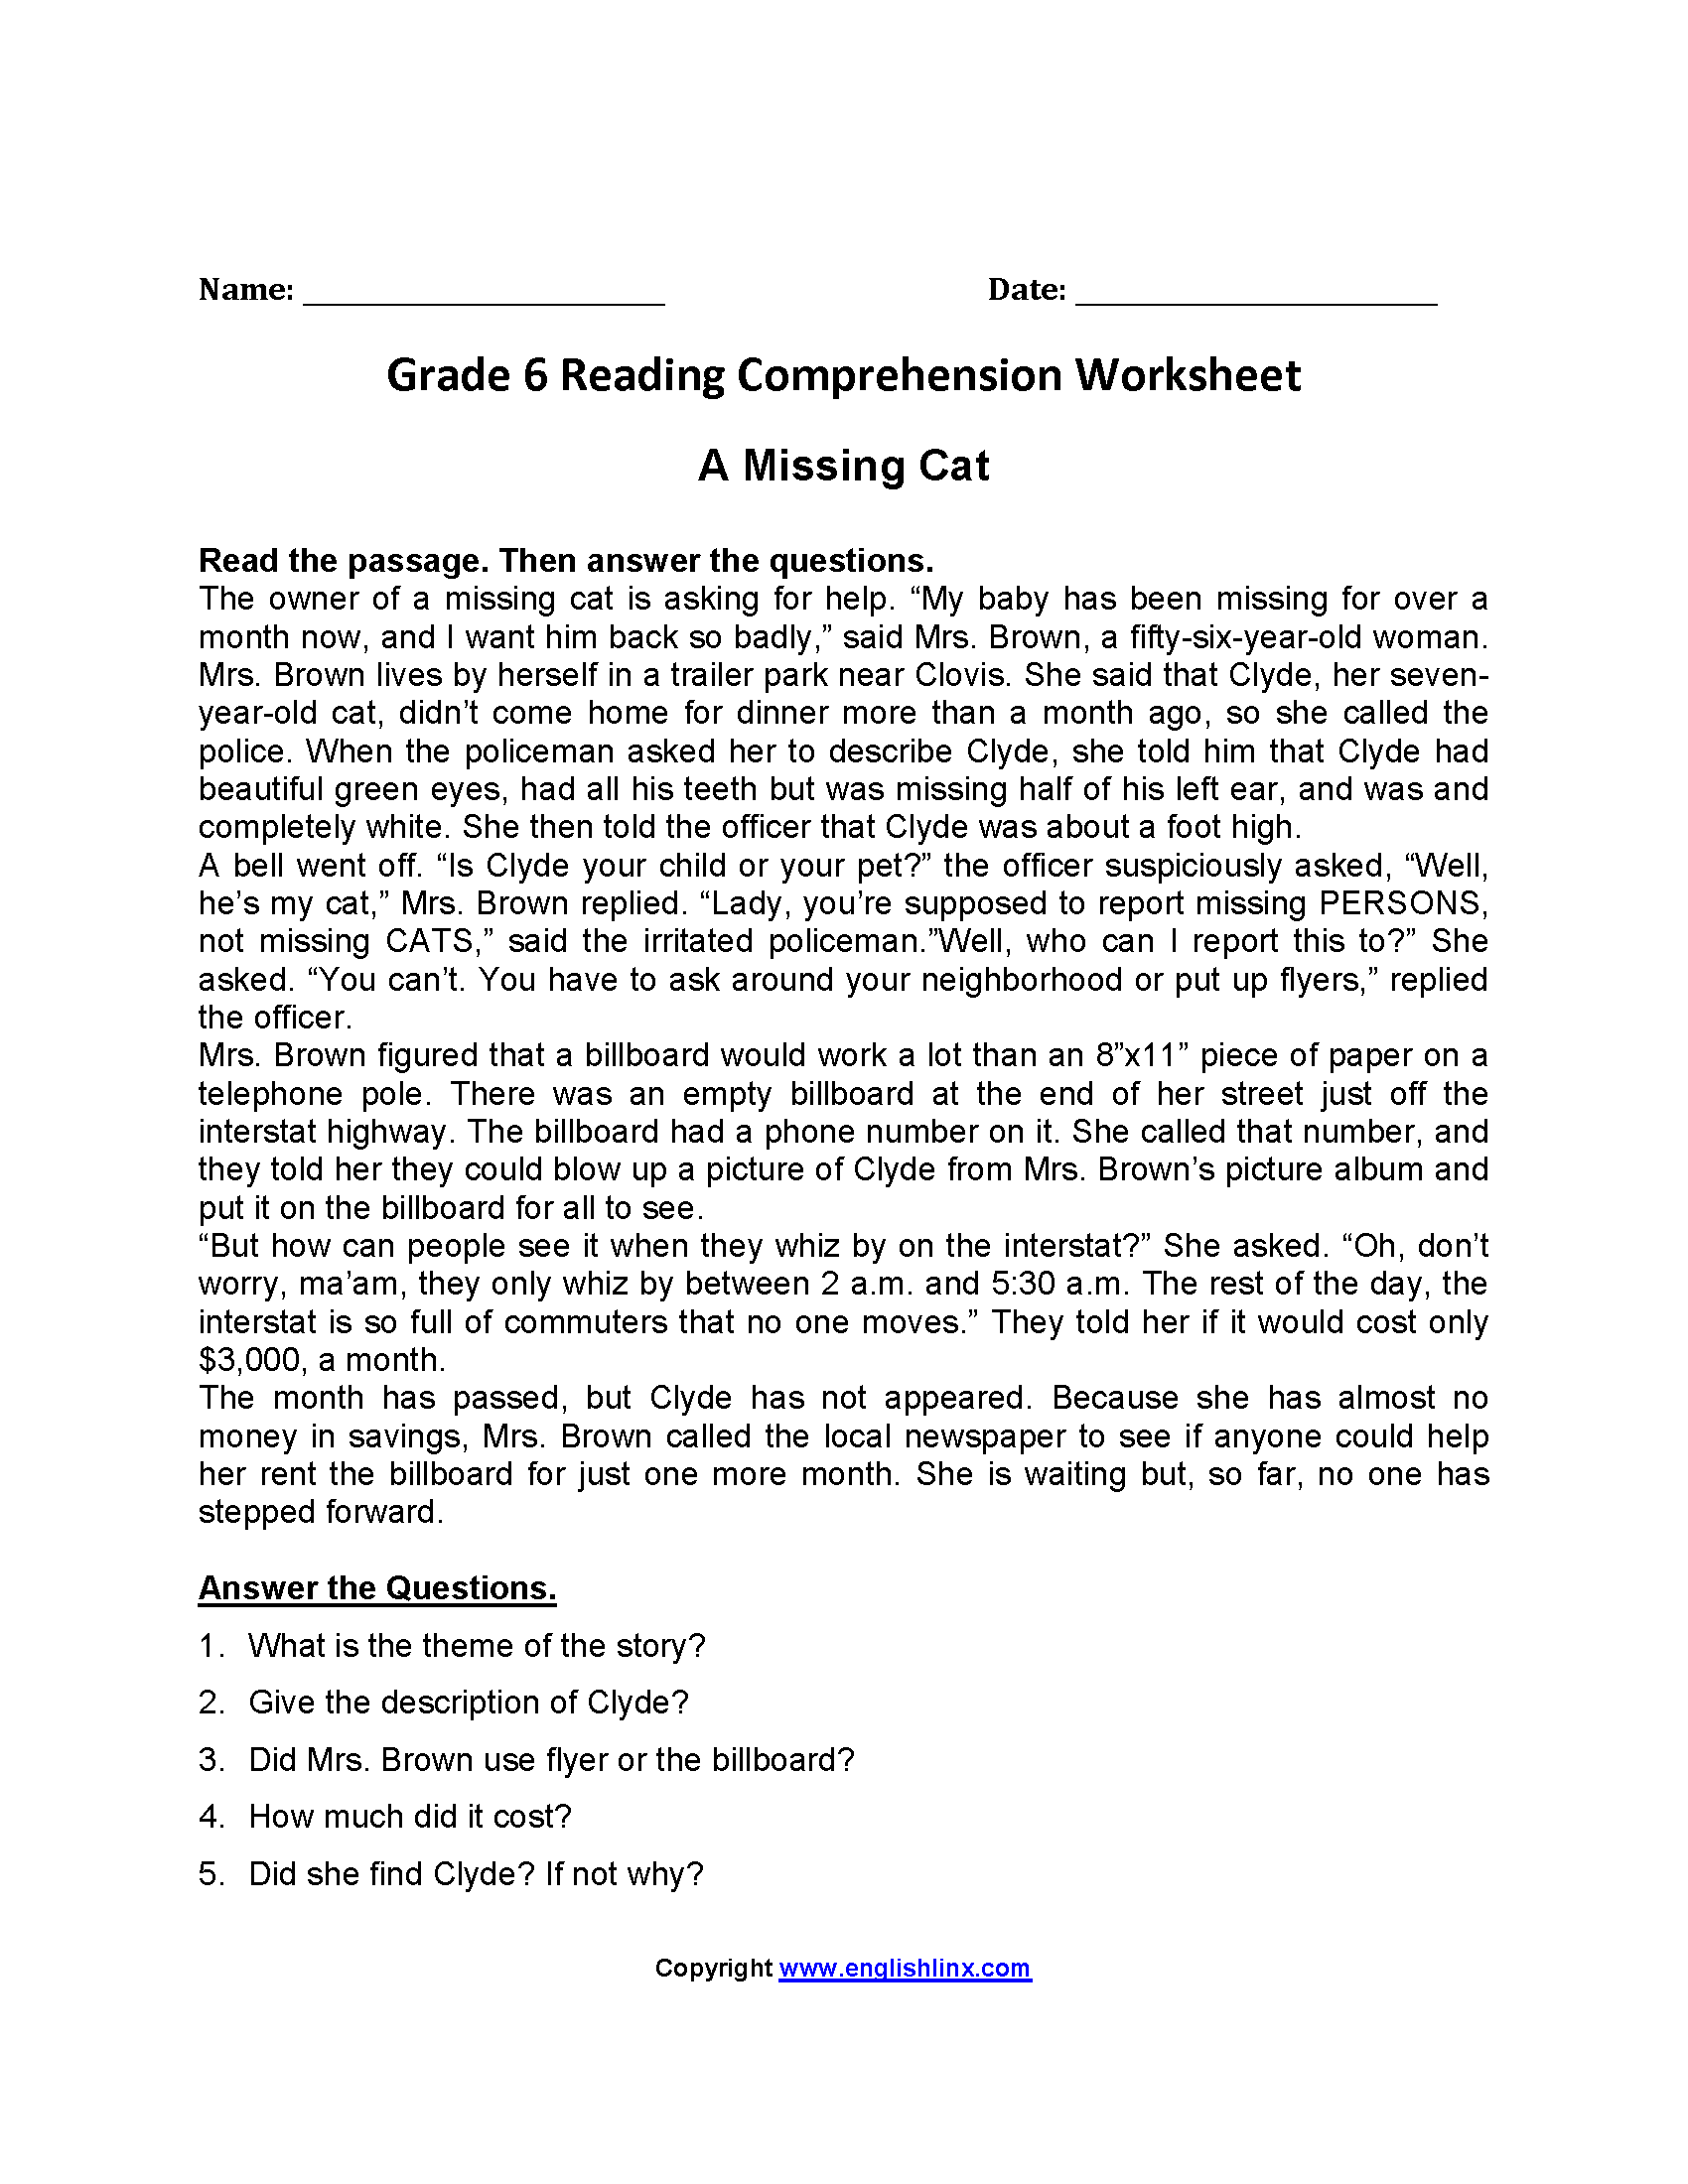 worksheet-reading-comprehension-worksheets-6th-grade-grass-fedjp-worksheet-study-site